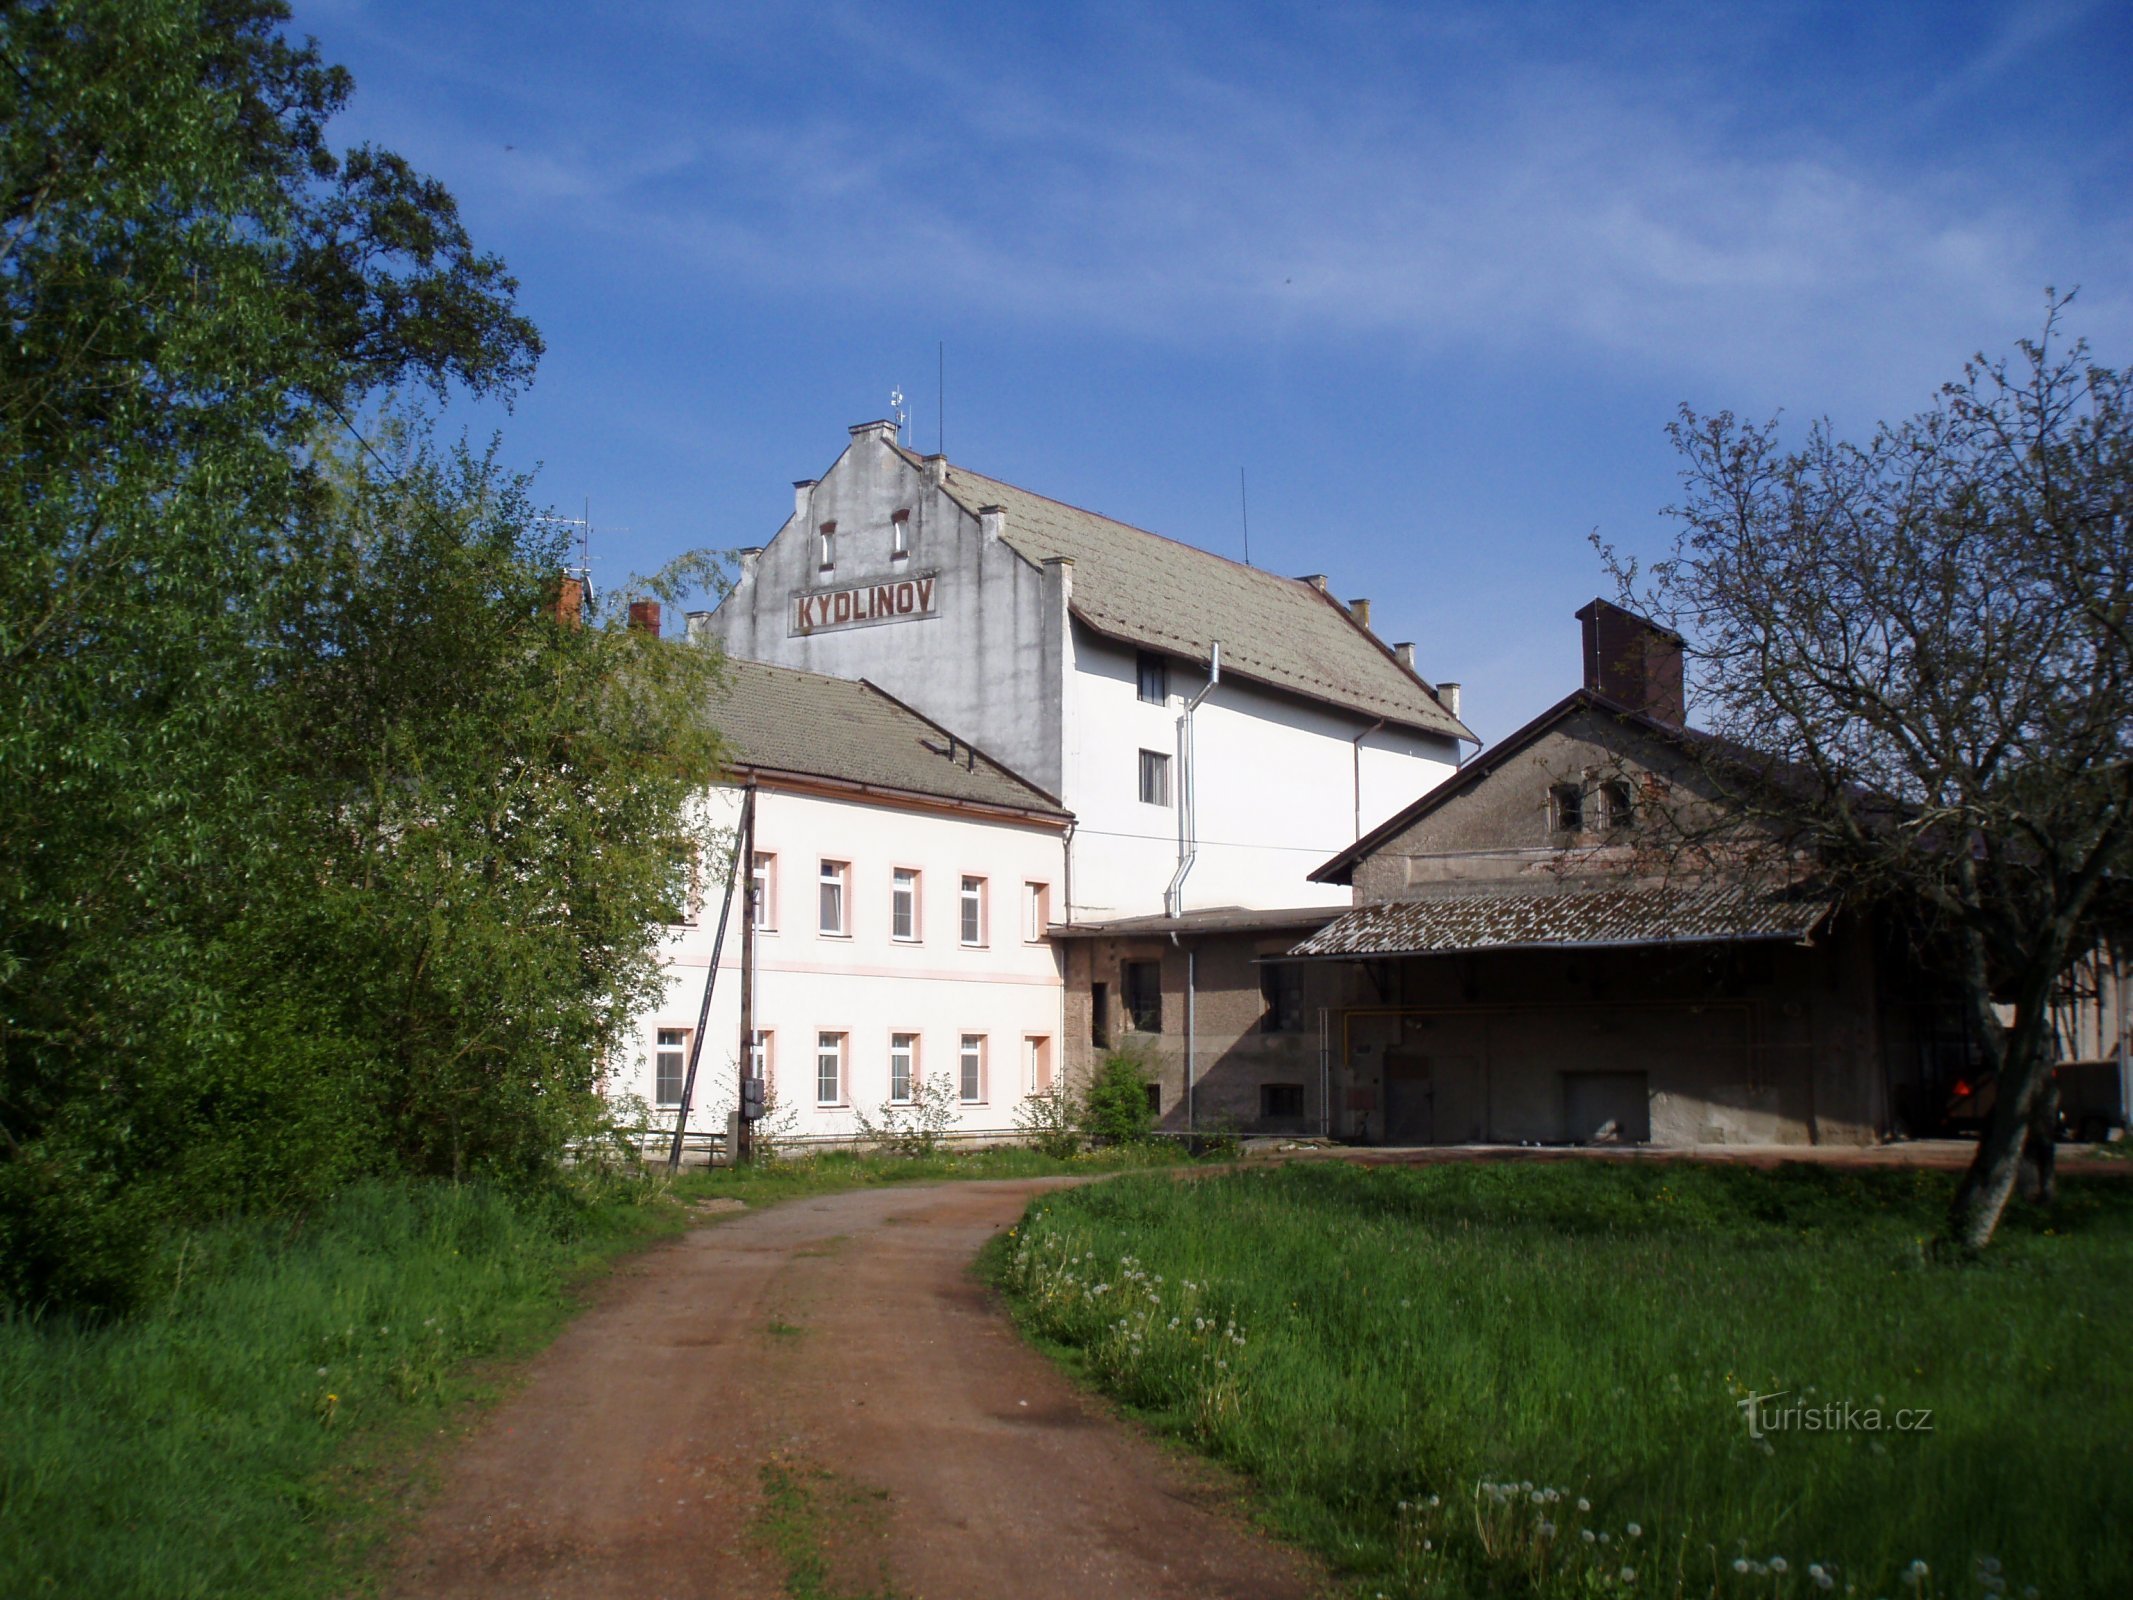 Bývalý mlýn Kydlinov (Hradec Králové)